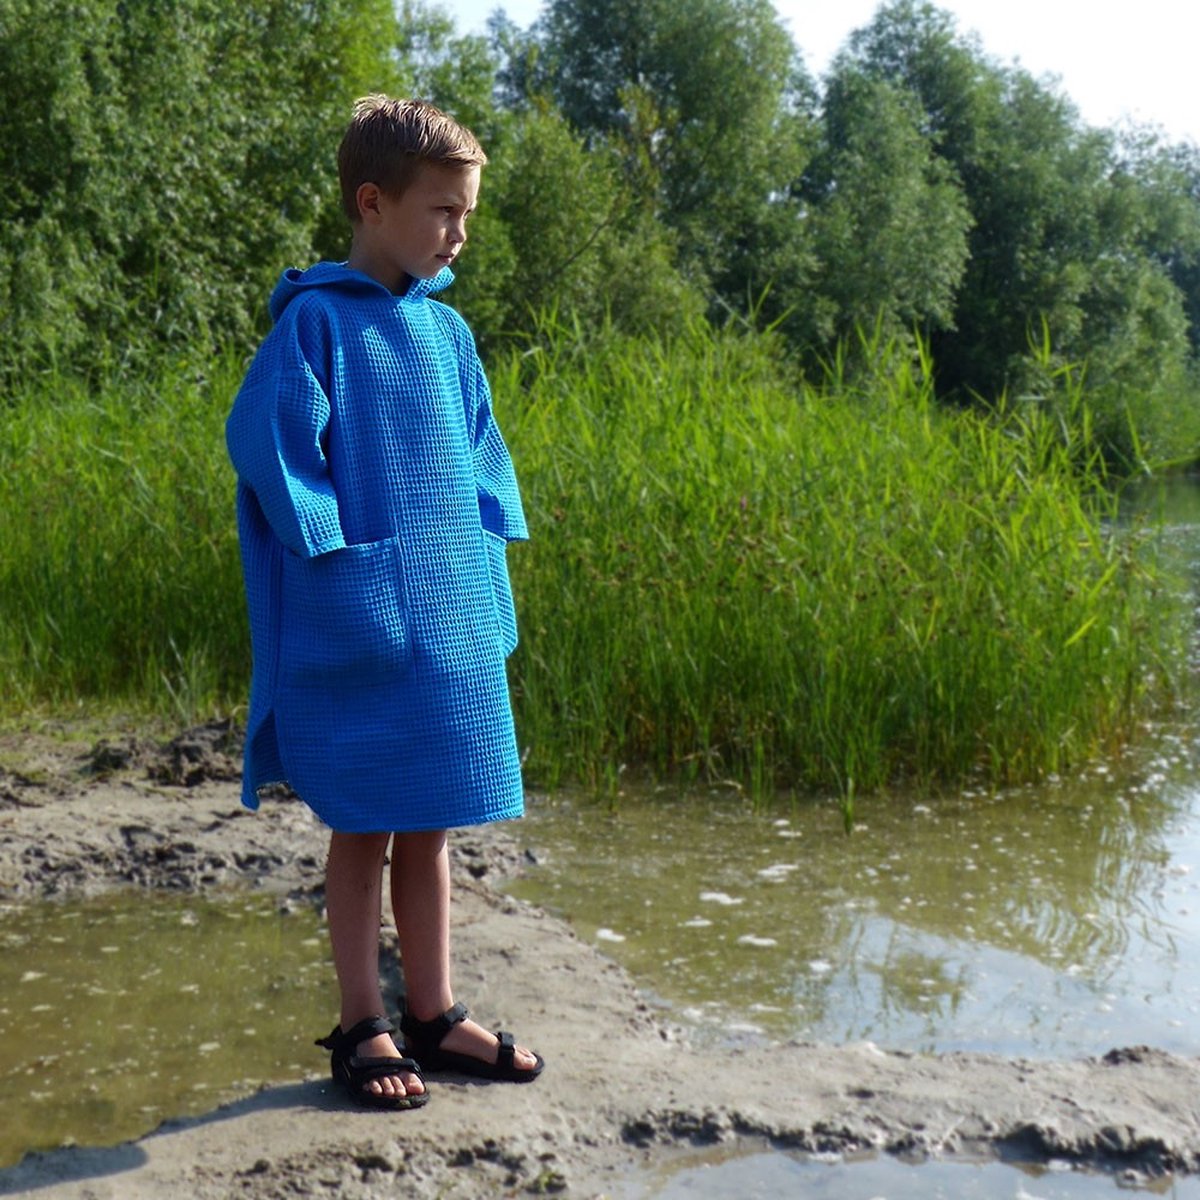 Zeemeermantel kids aqua blue - Unisex - met kleine handdoek